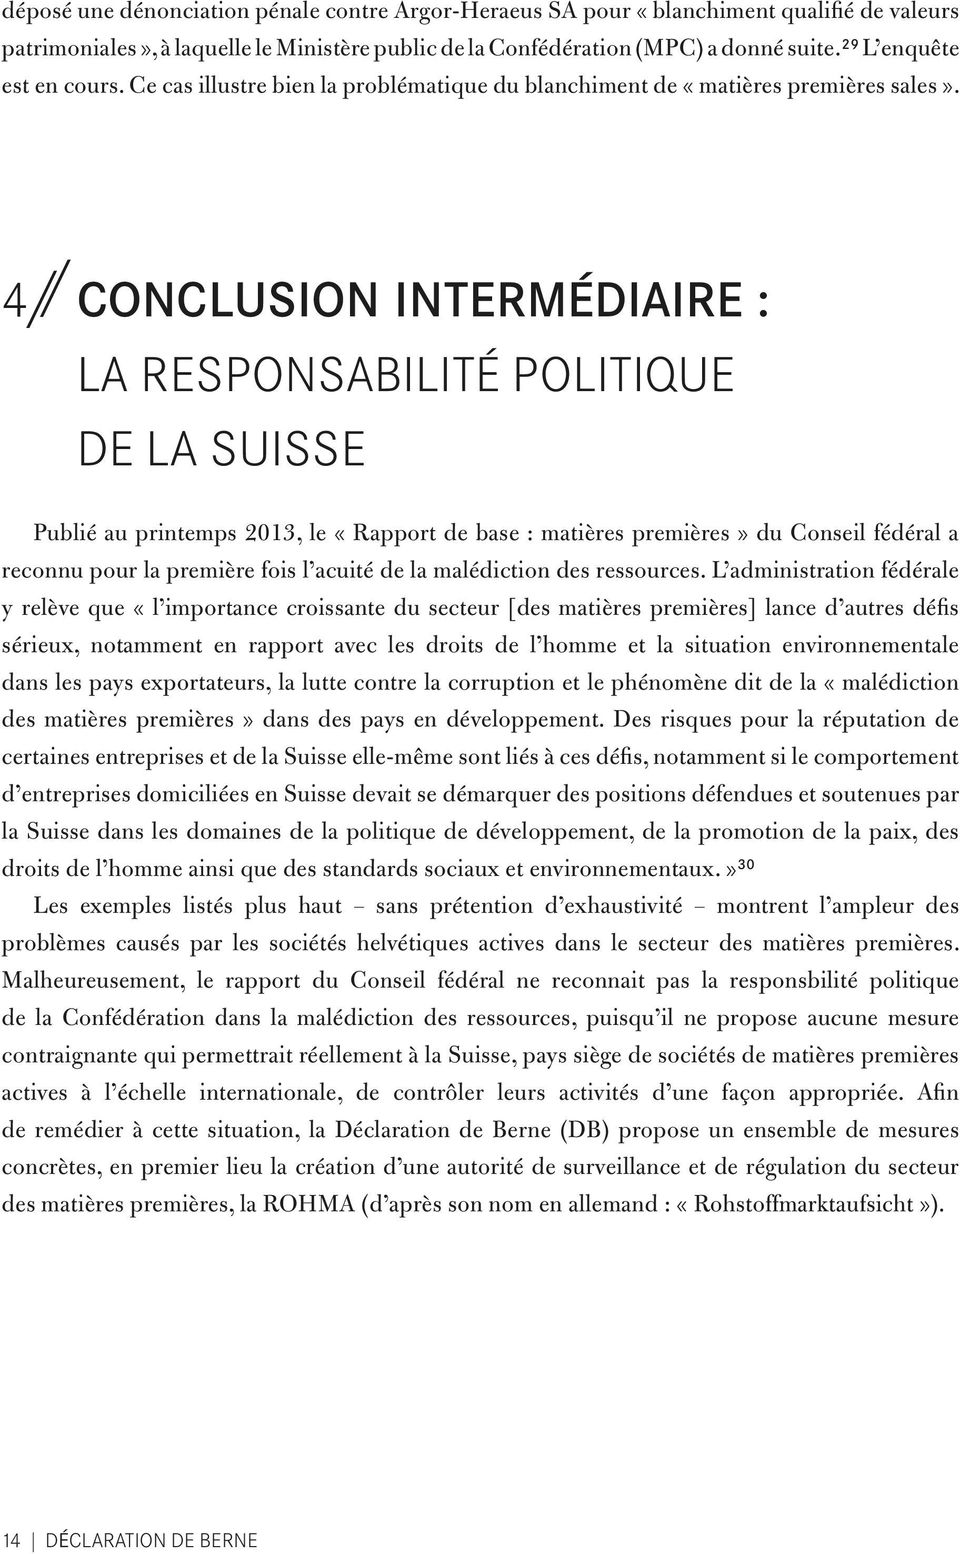 4 // Conclusion intermédiaire : la responsabilité politique de la Suisse Publié au printemps 2013, le «Rapport de base : matières premières» du Conseil fédéral a reconnu pour la première fois l